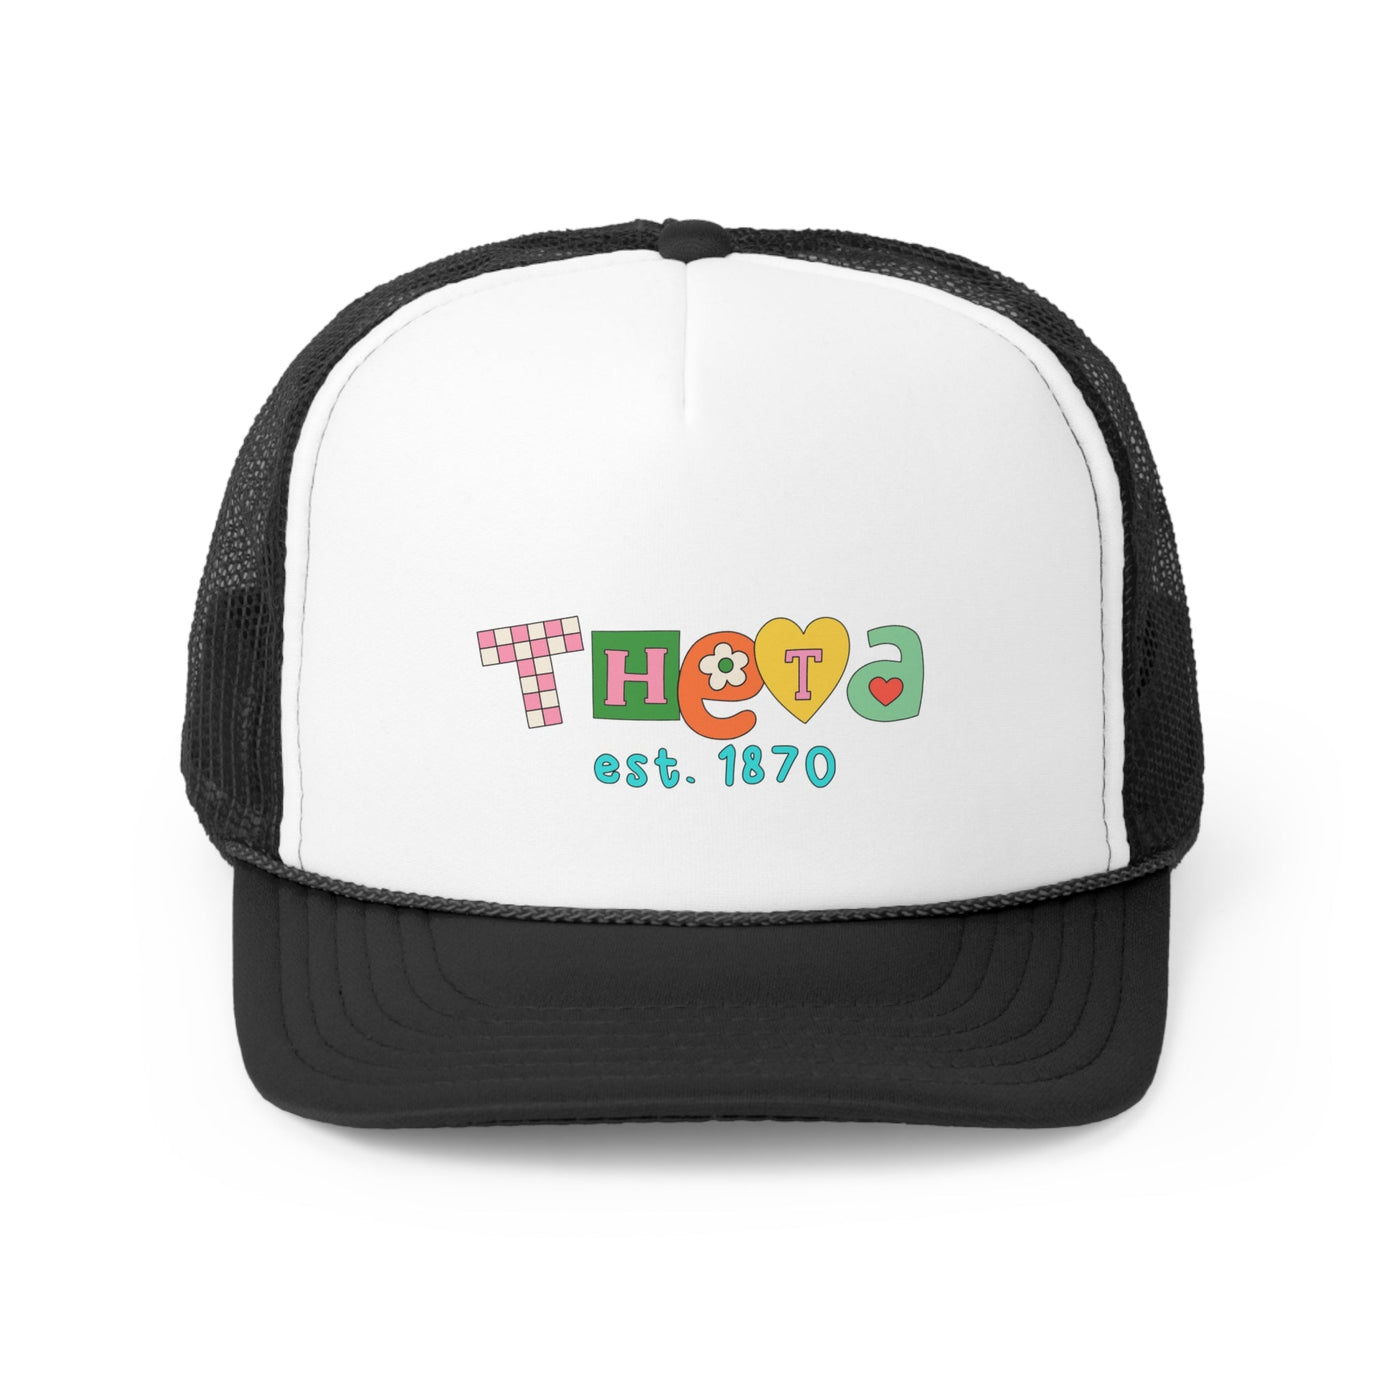 Kappa Alpha Theta Scrabble Doodle Foam Trucker Hat